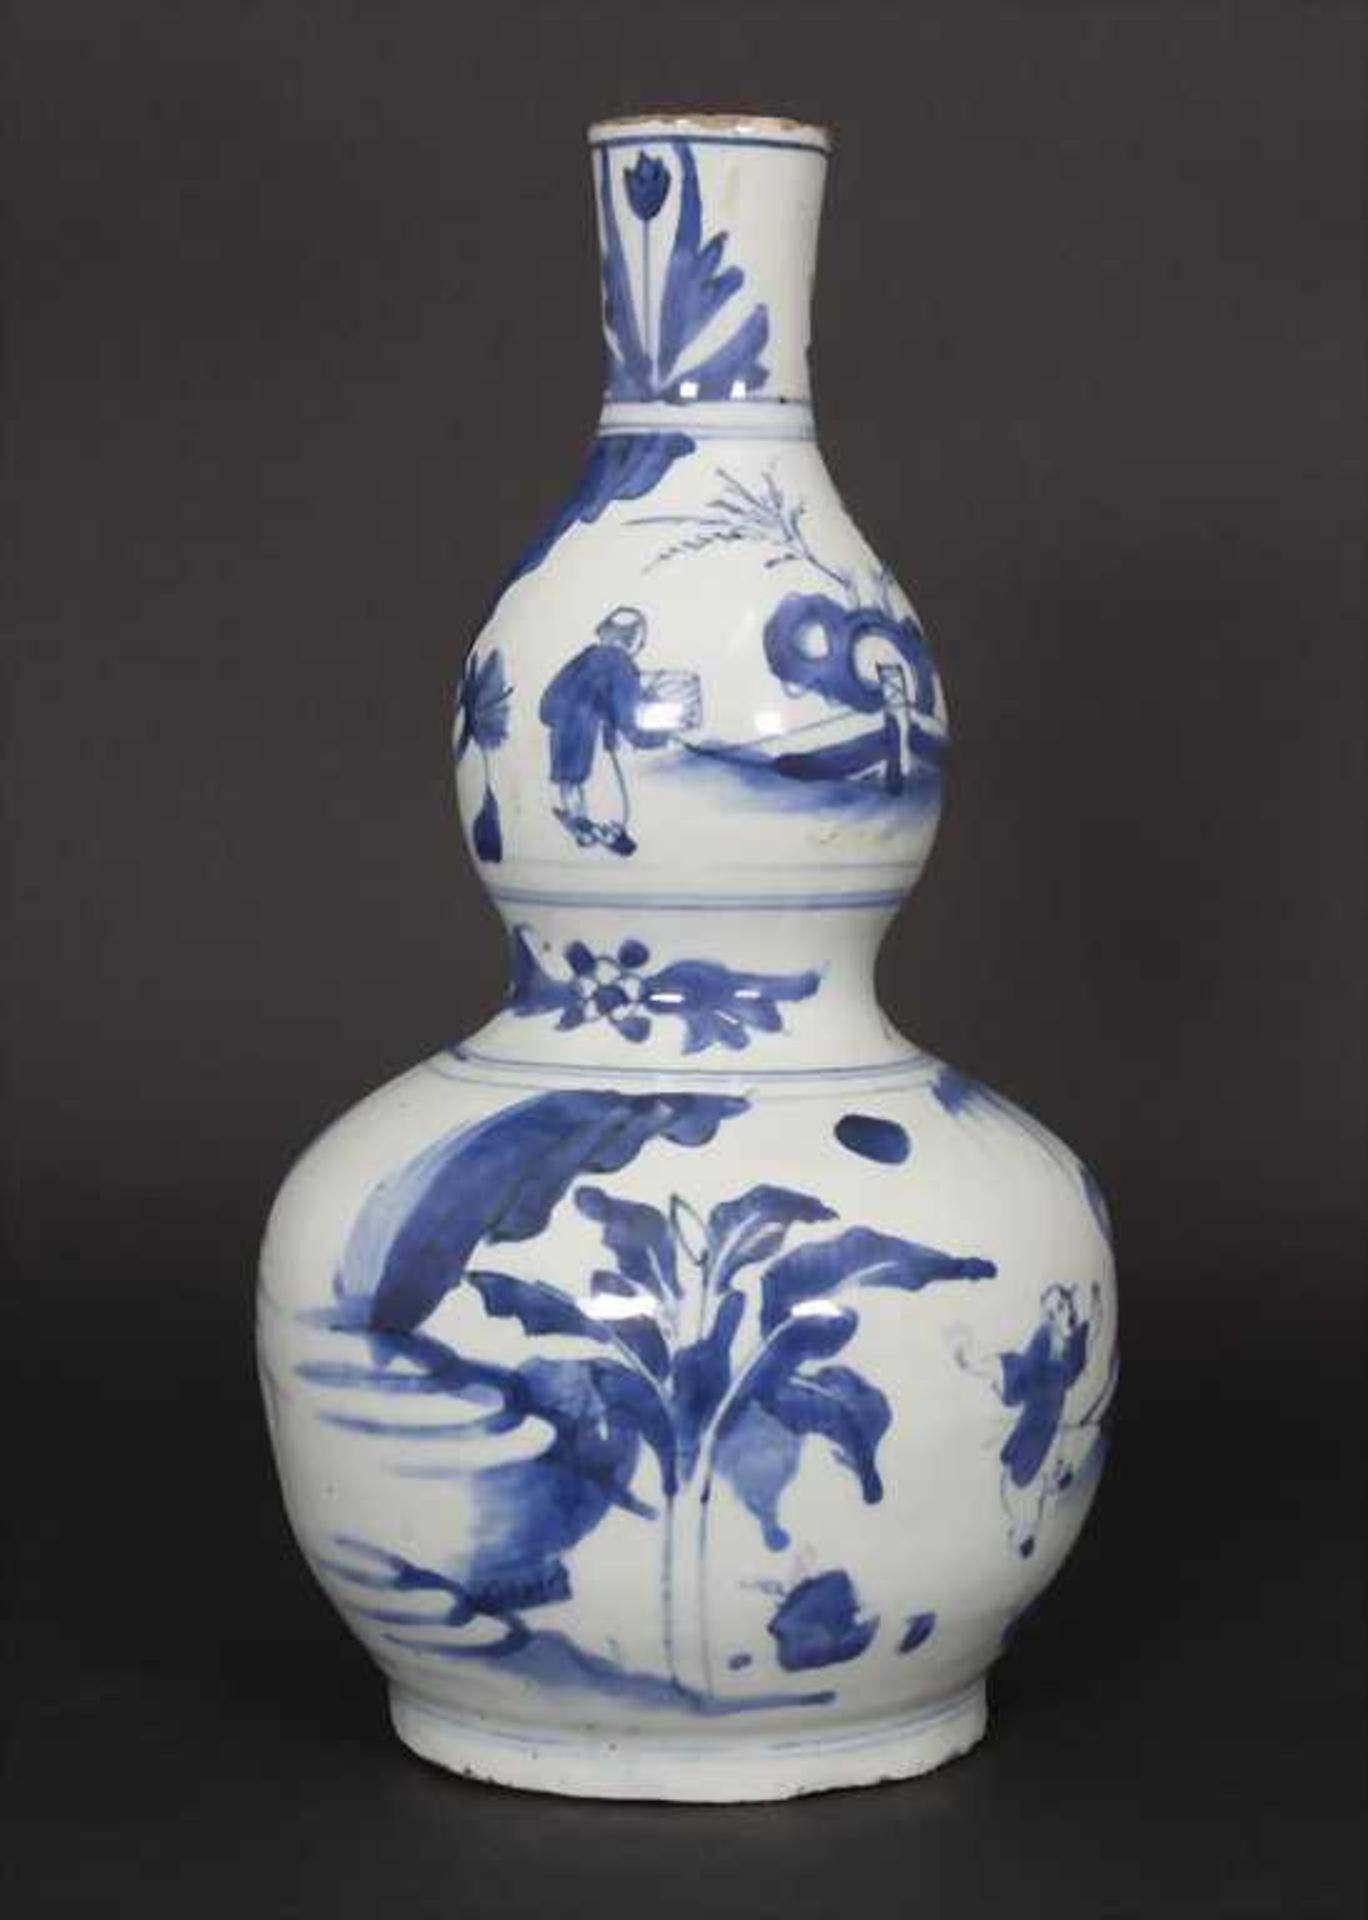 Kalebassenvase / A calabash vase, China, wohl 17. Jh.Material: Porzellan, blaue Unterglasurmalerei, - Bild 10 aus 17